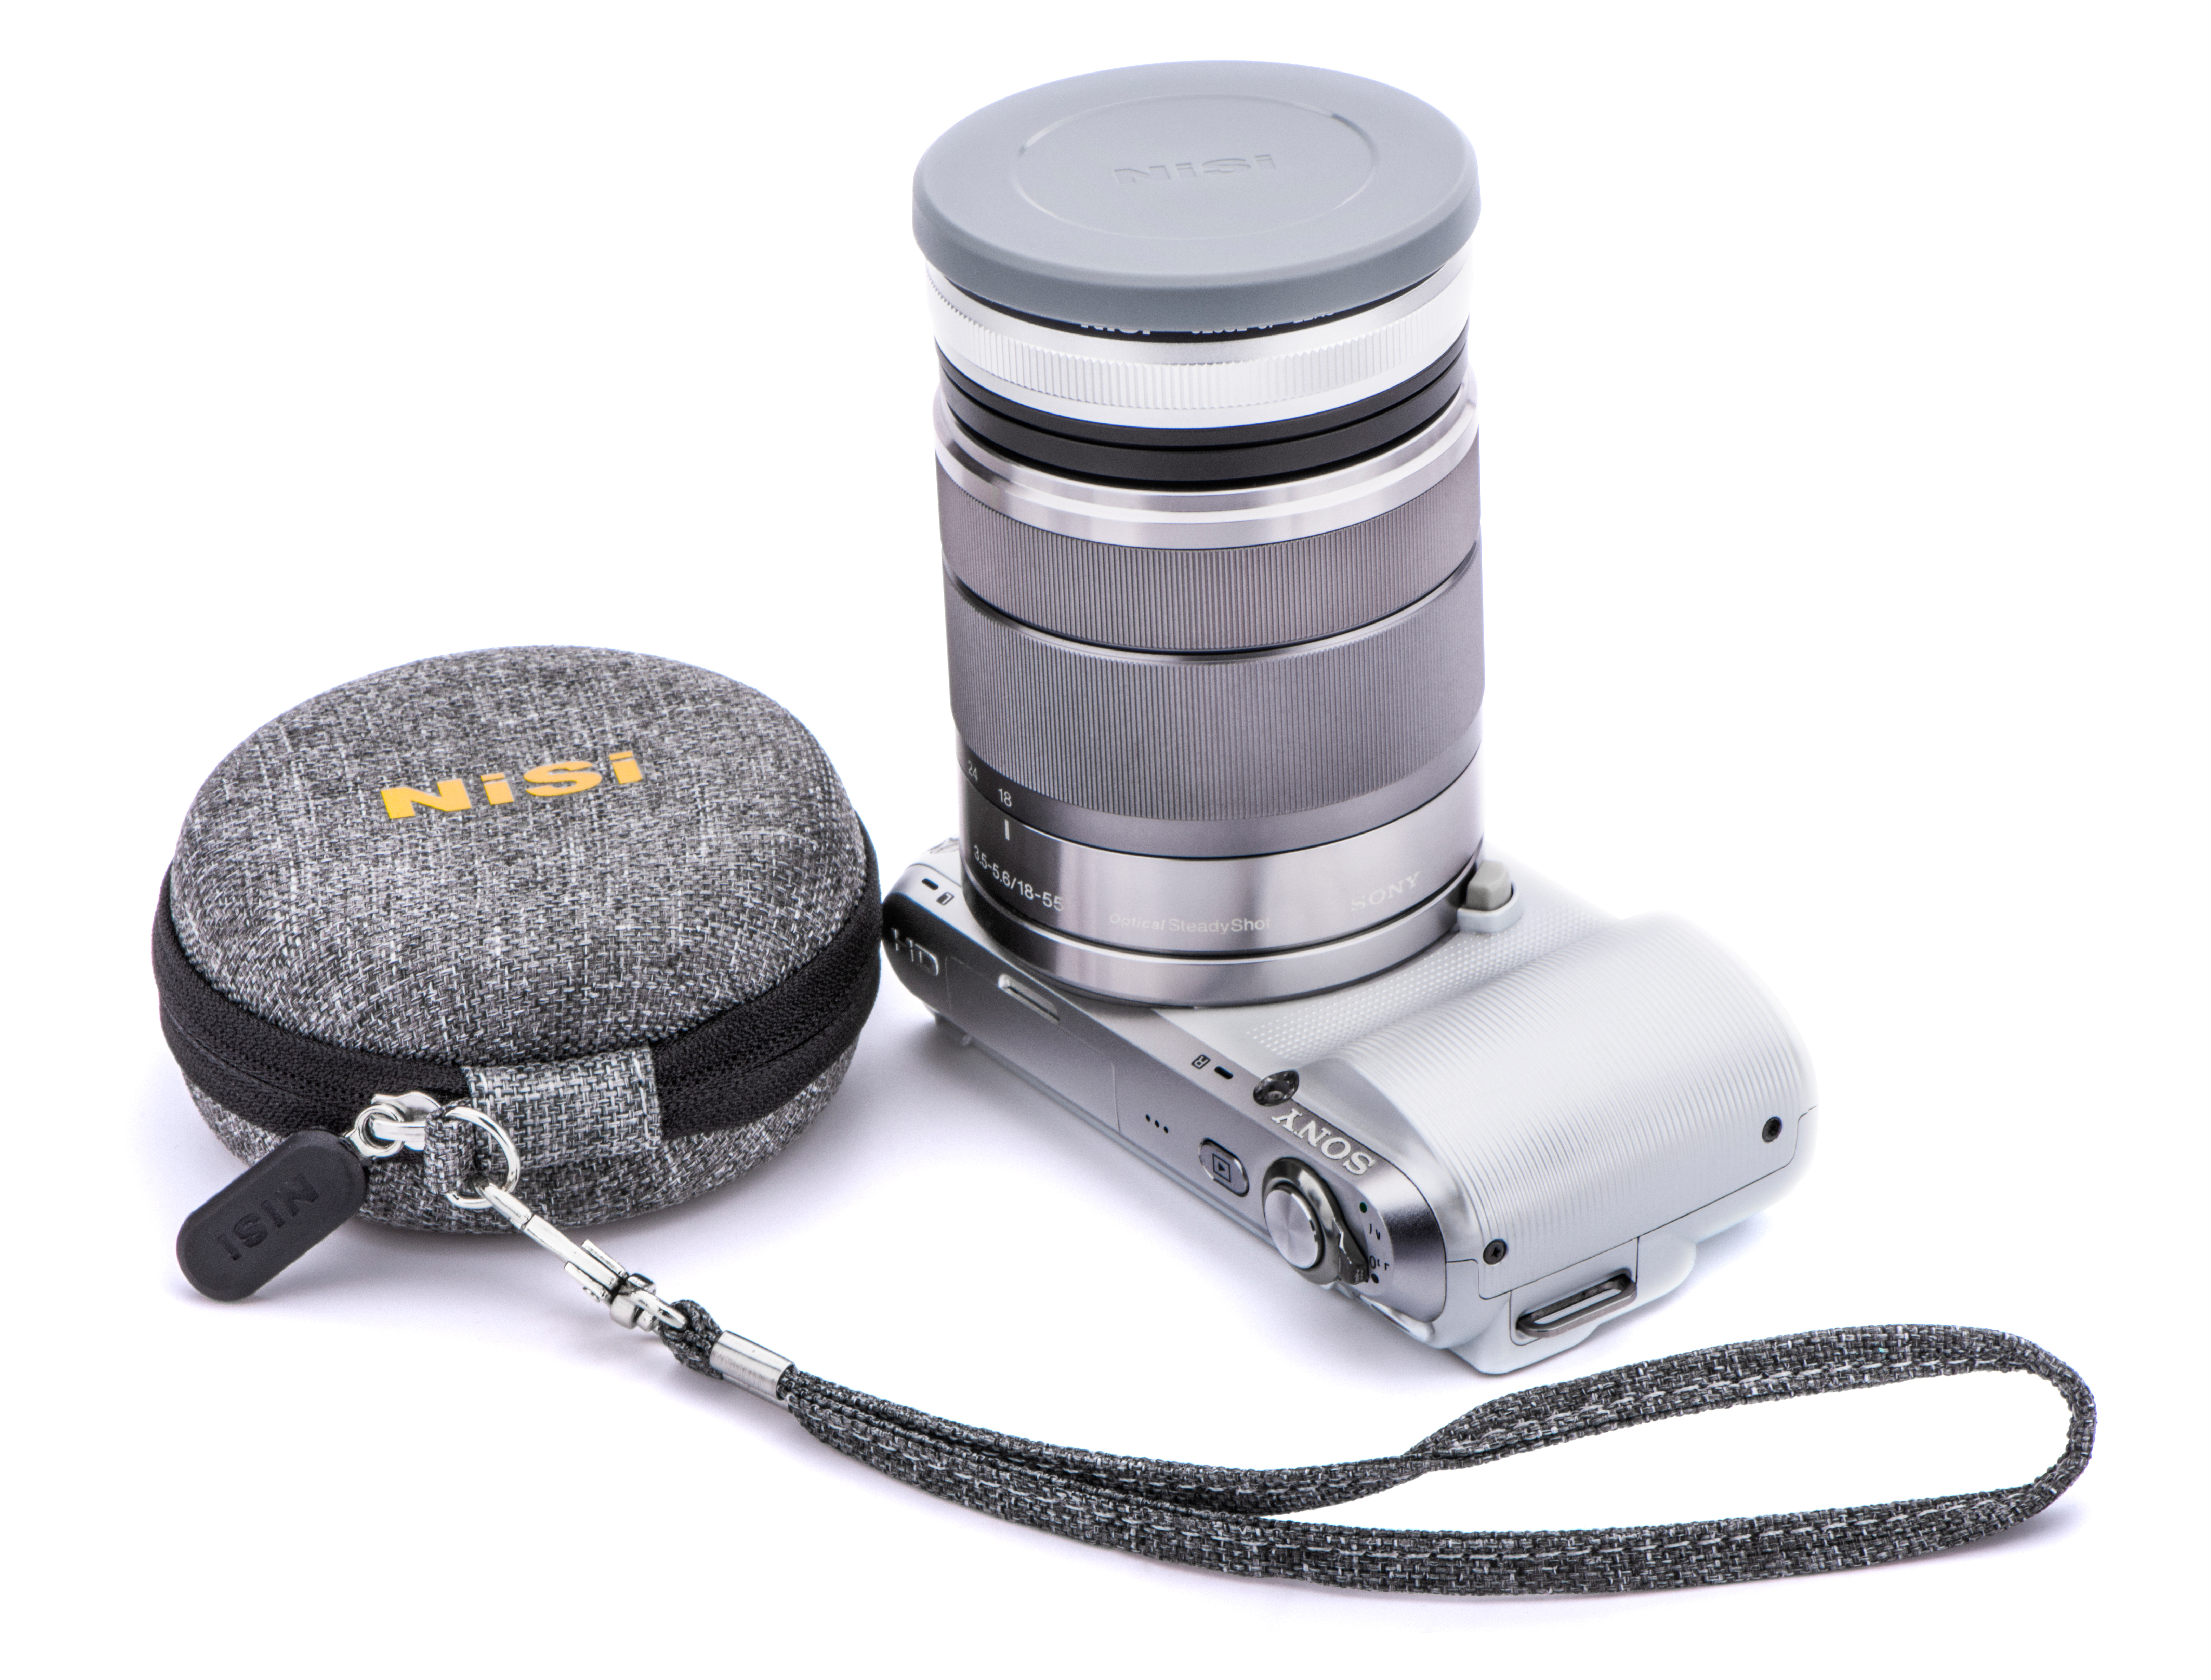 NiSi Nahlinse 58mm auf Objektiv und Kamera mit Schutzdeckel und Transportcase welches daneben liegt